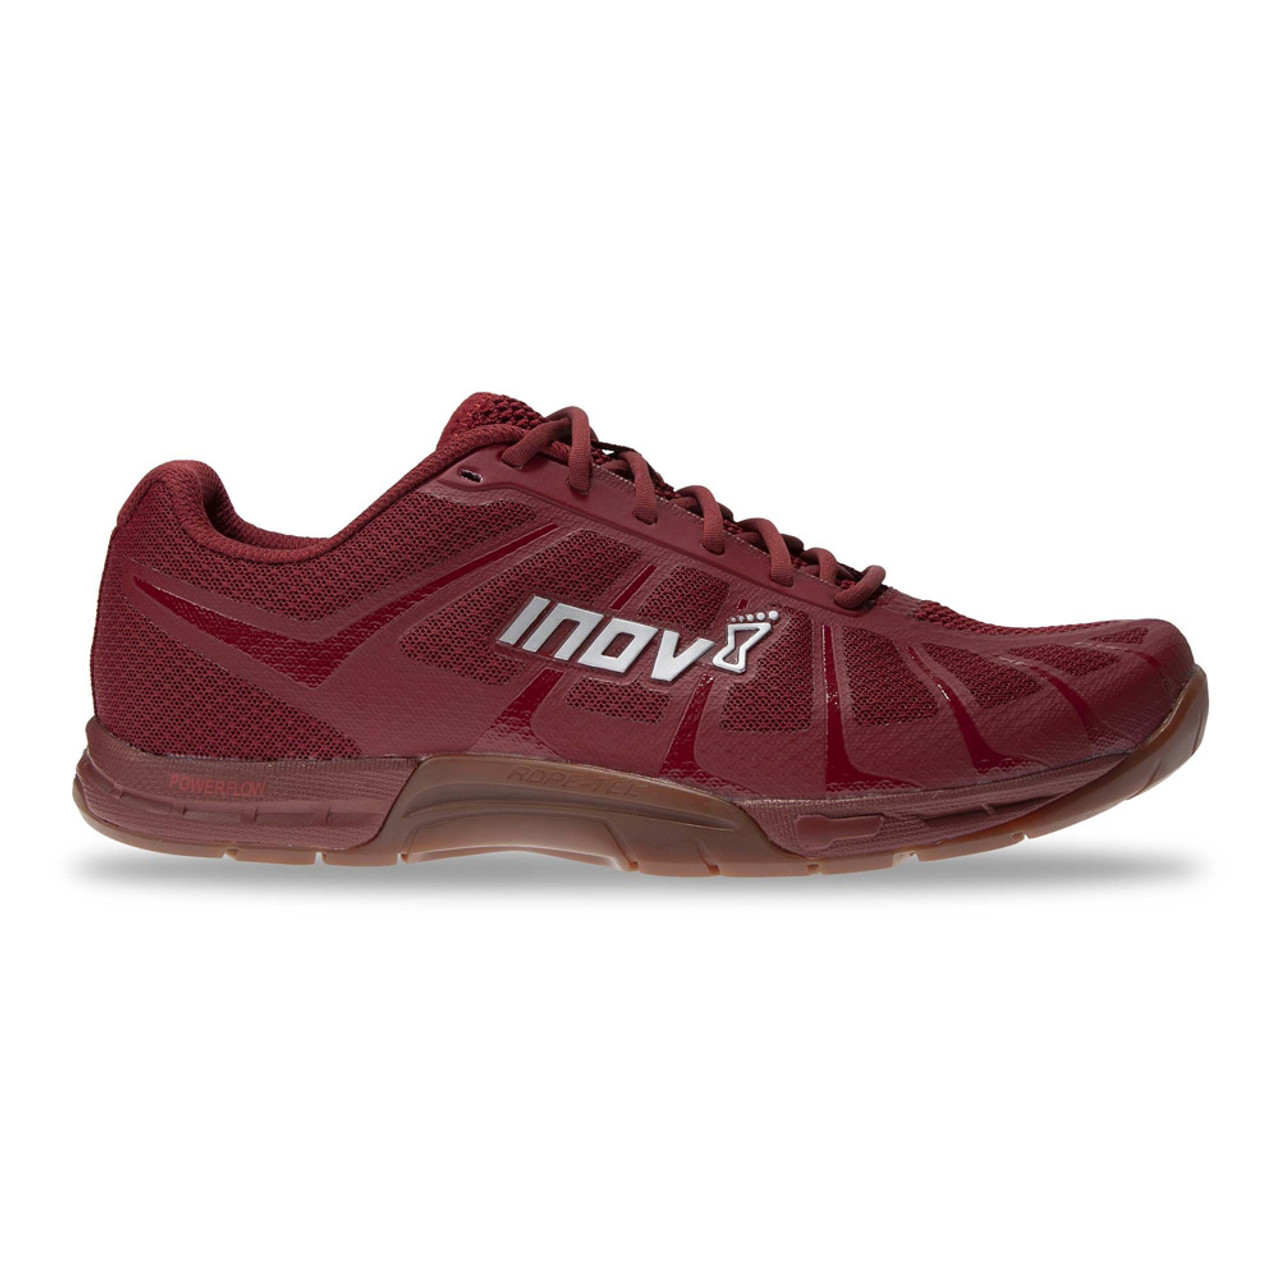 INOV-8 Men's F-Lite 235 V3 Black/Gum Training Gym Shoes - Free Shipping